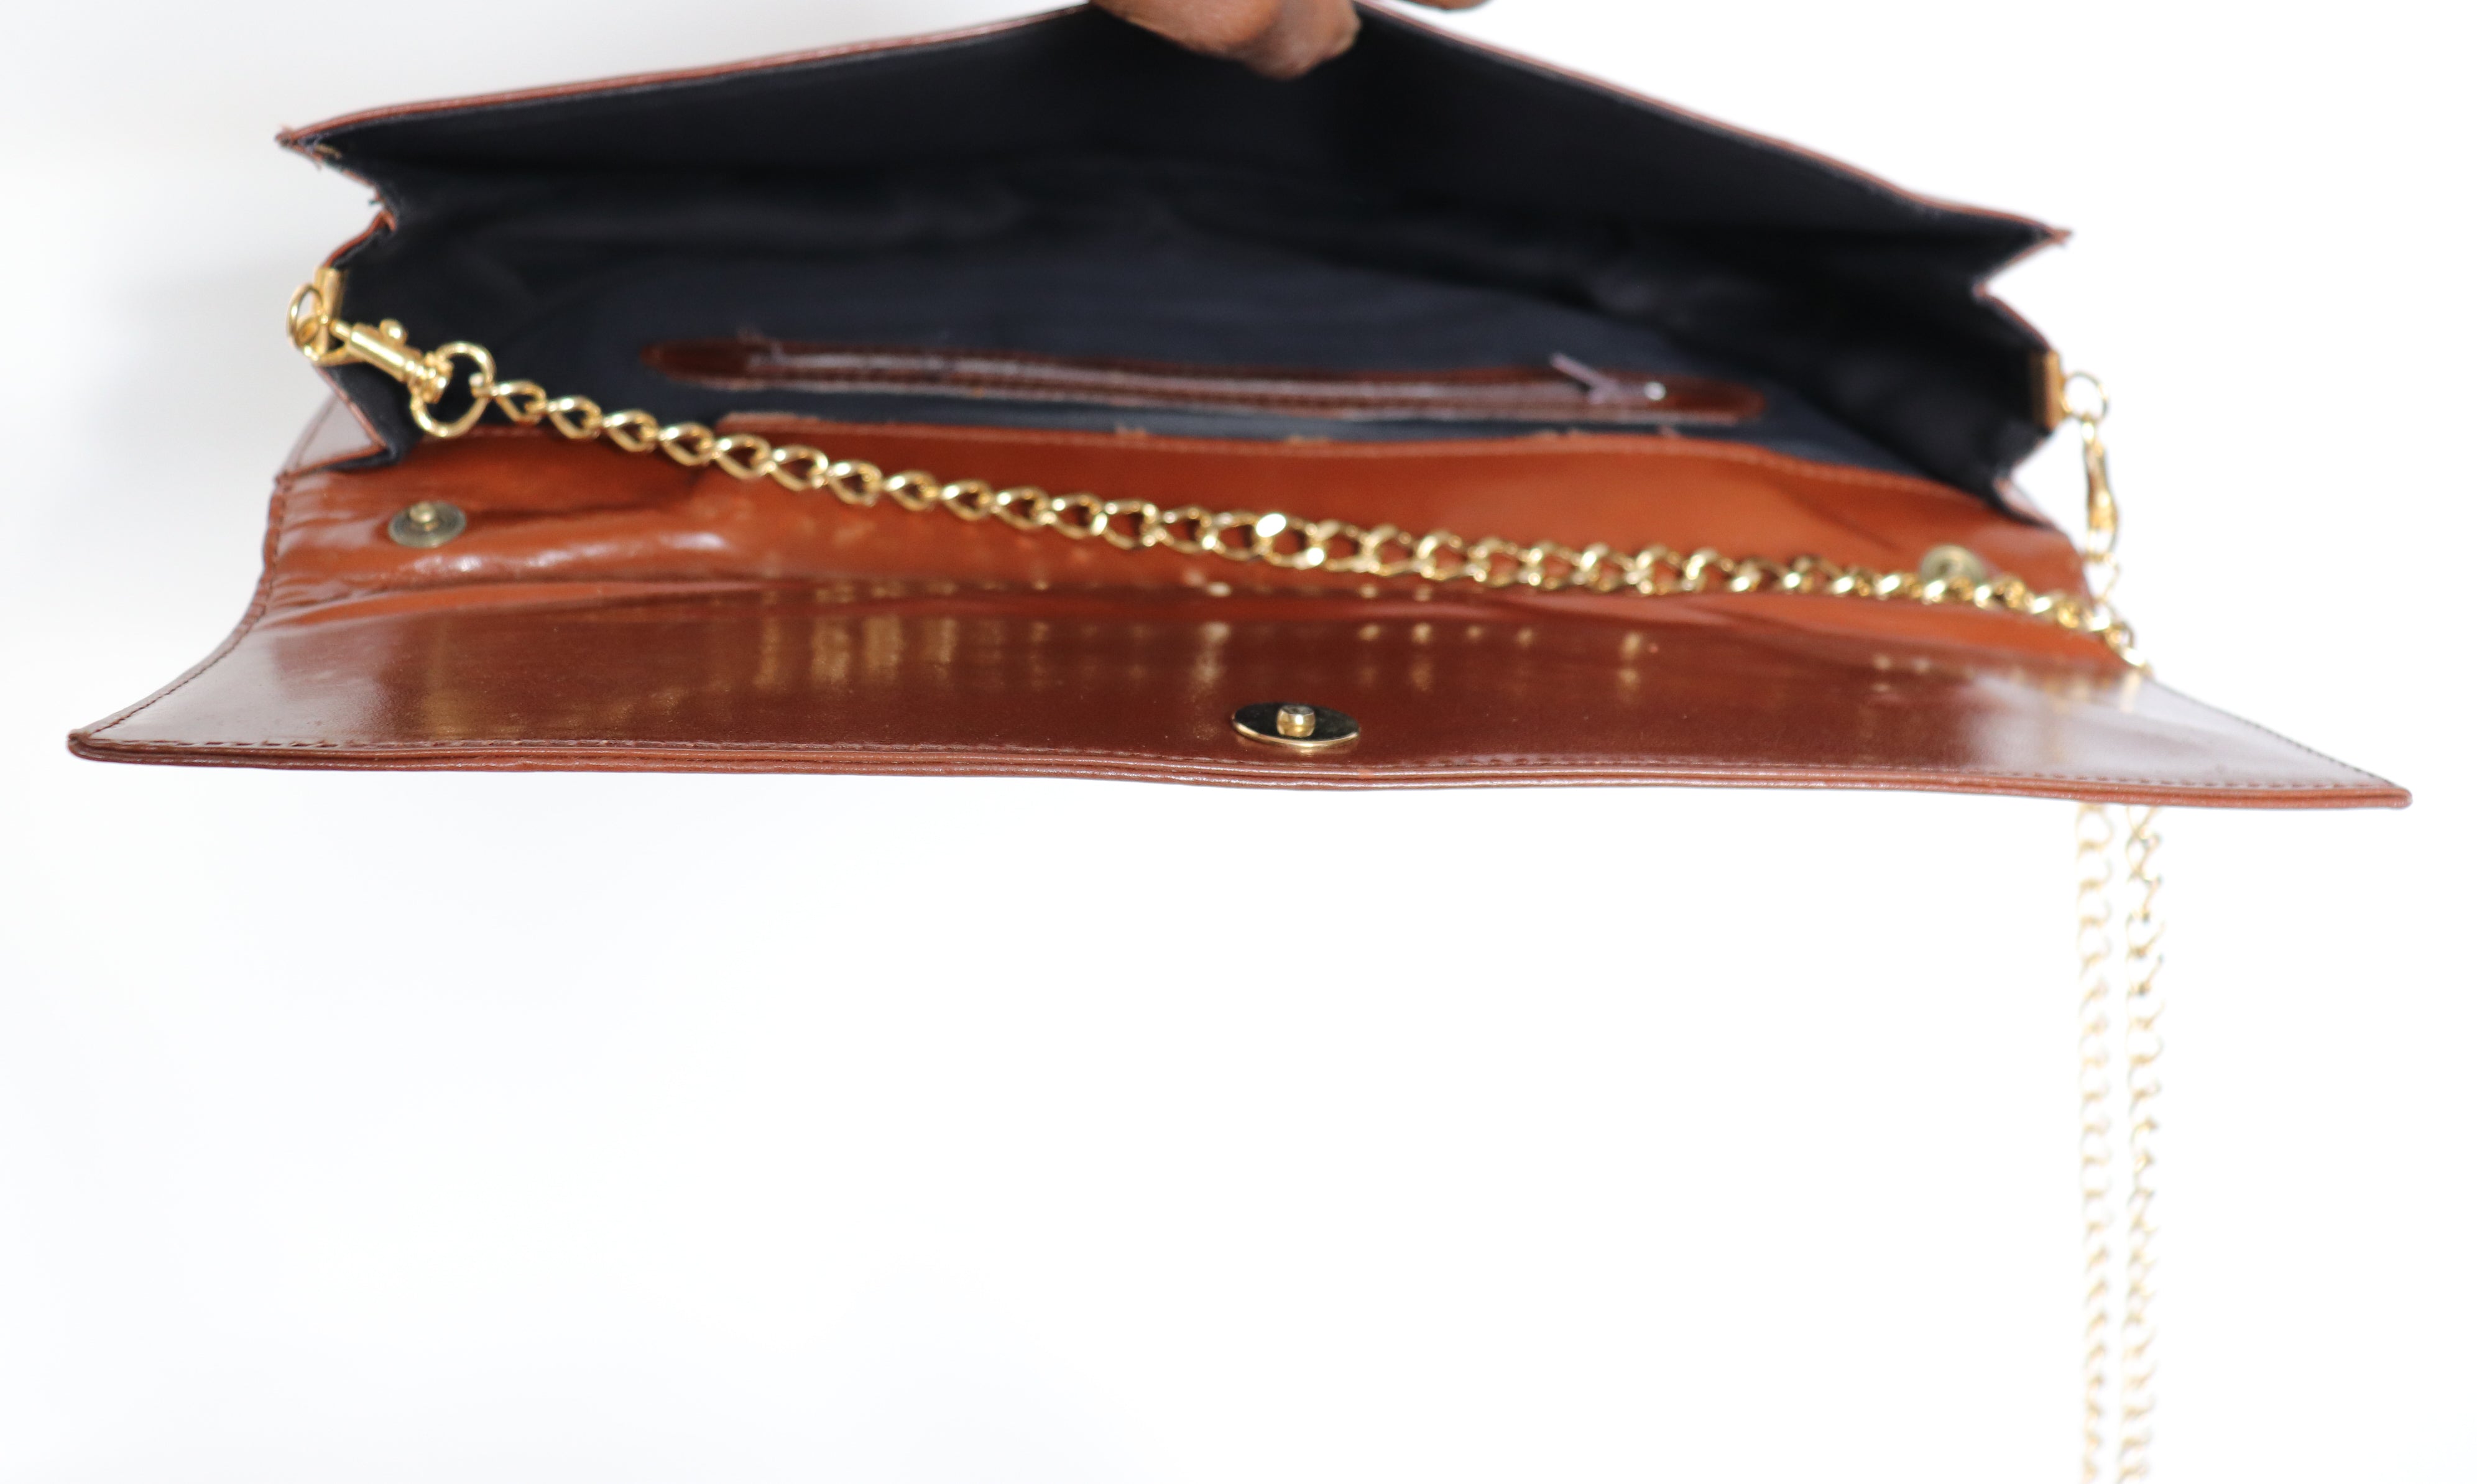 Brown Shoulder Bag / Clutch Bag - Vintage 1980s- Faux Leather - Medium